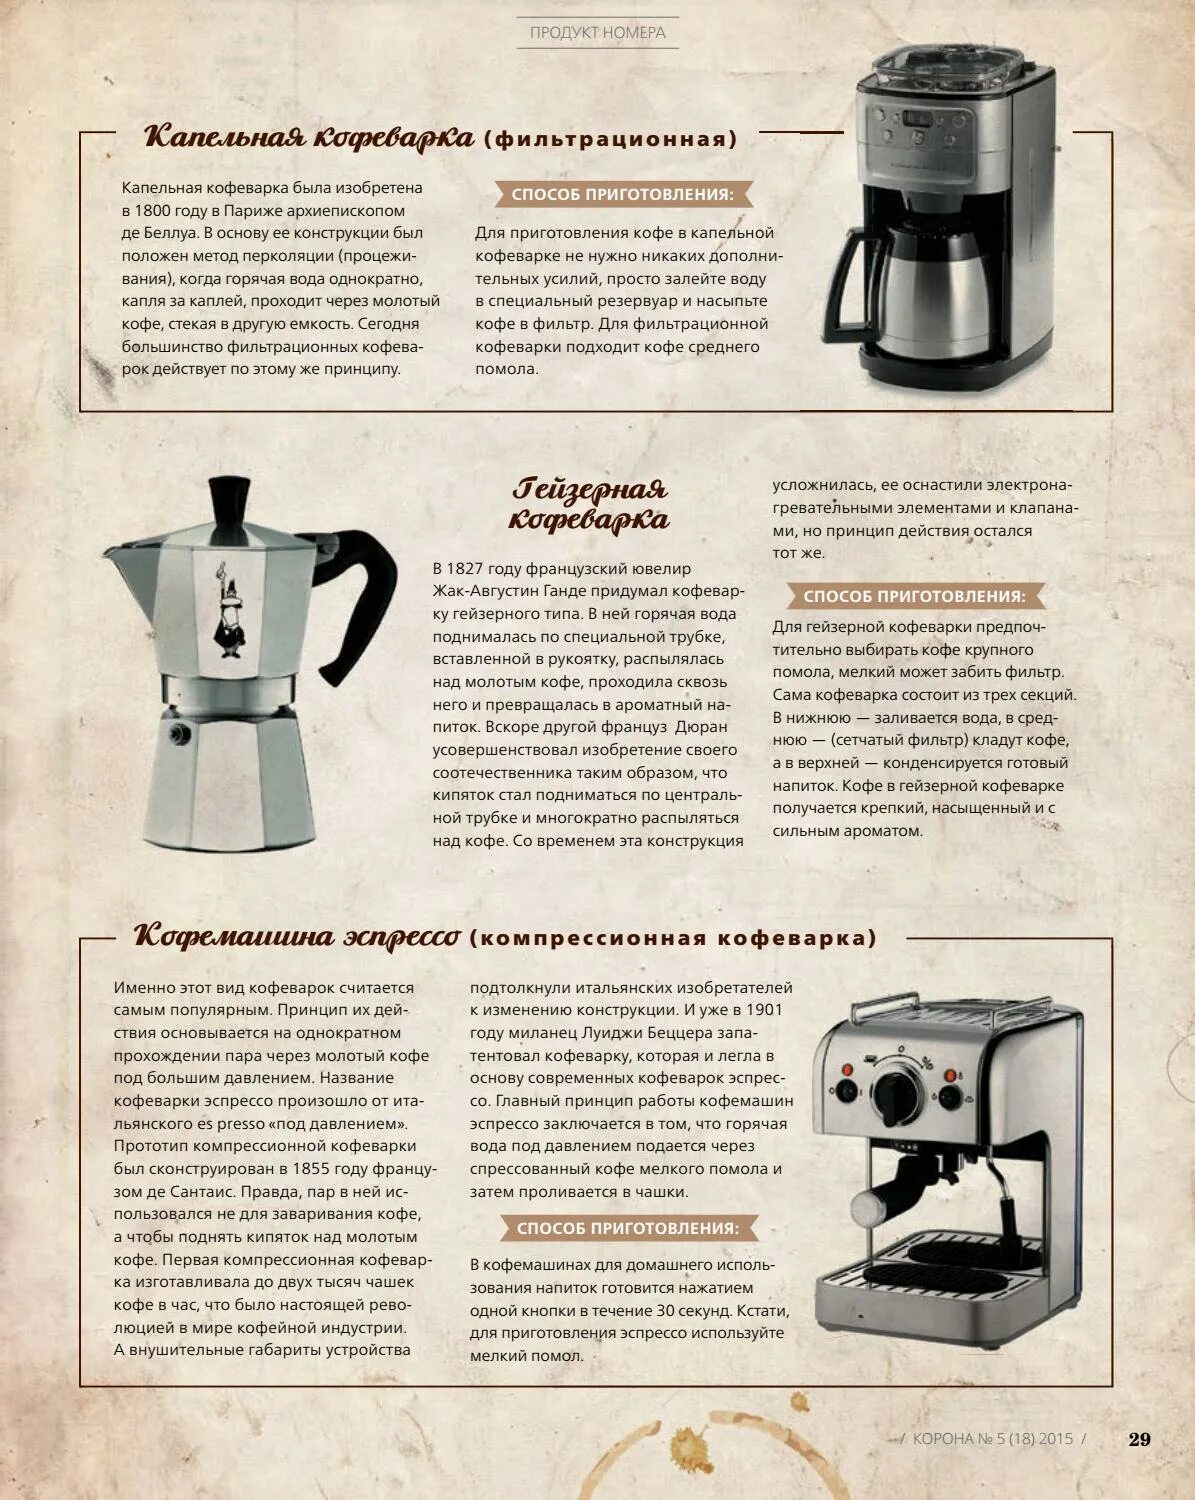 Сварить кофе пропорции. Гейзерная кофеварка принцип приготовления кофе. Как сварить кофе в капельной кофеварке. Гейзерная кофеварка Тефаль. Krups гейзерная кофеварка.